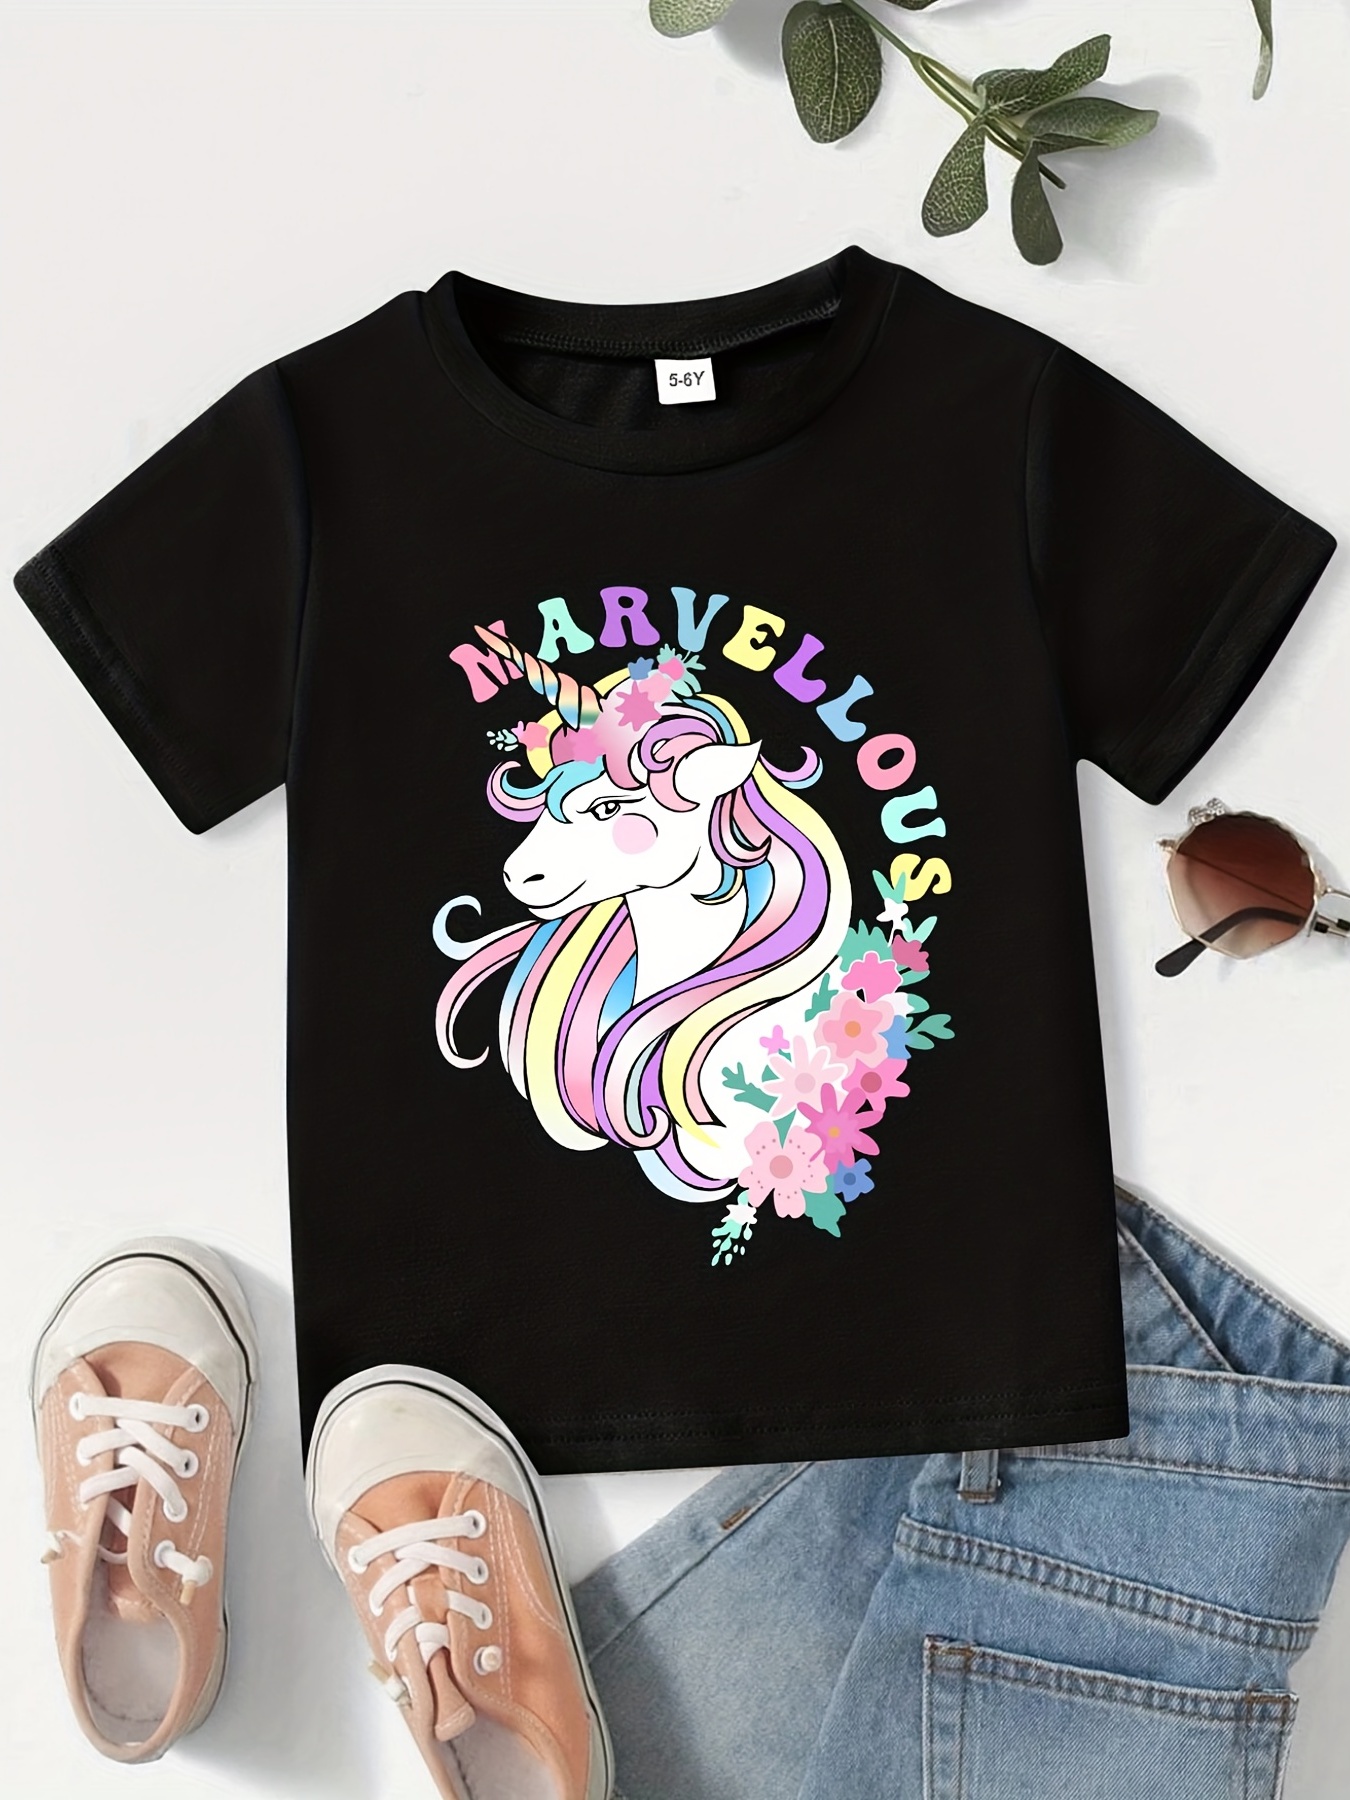 Camiseta para niña unicornio - Ostu